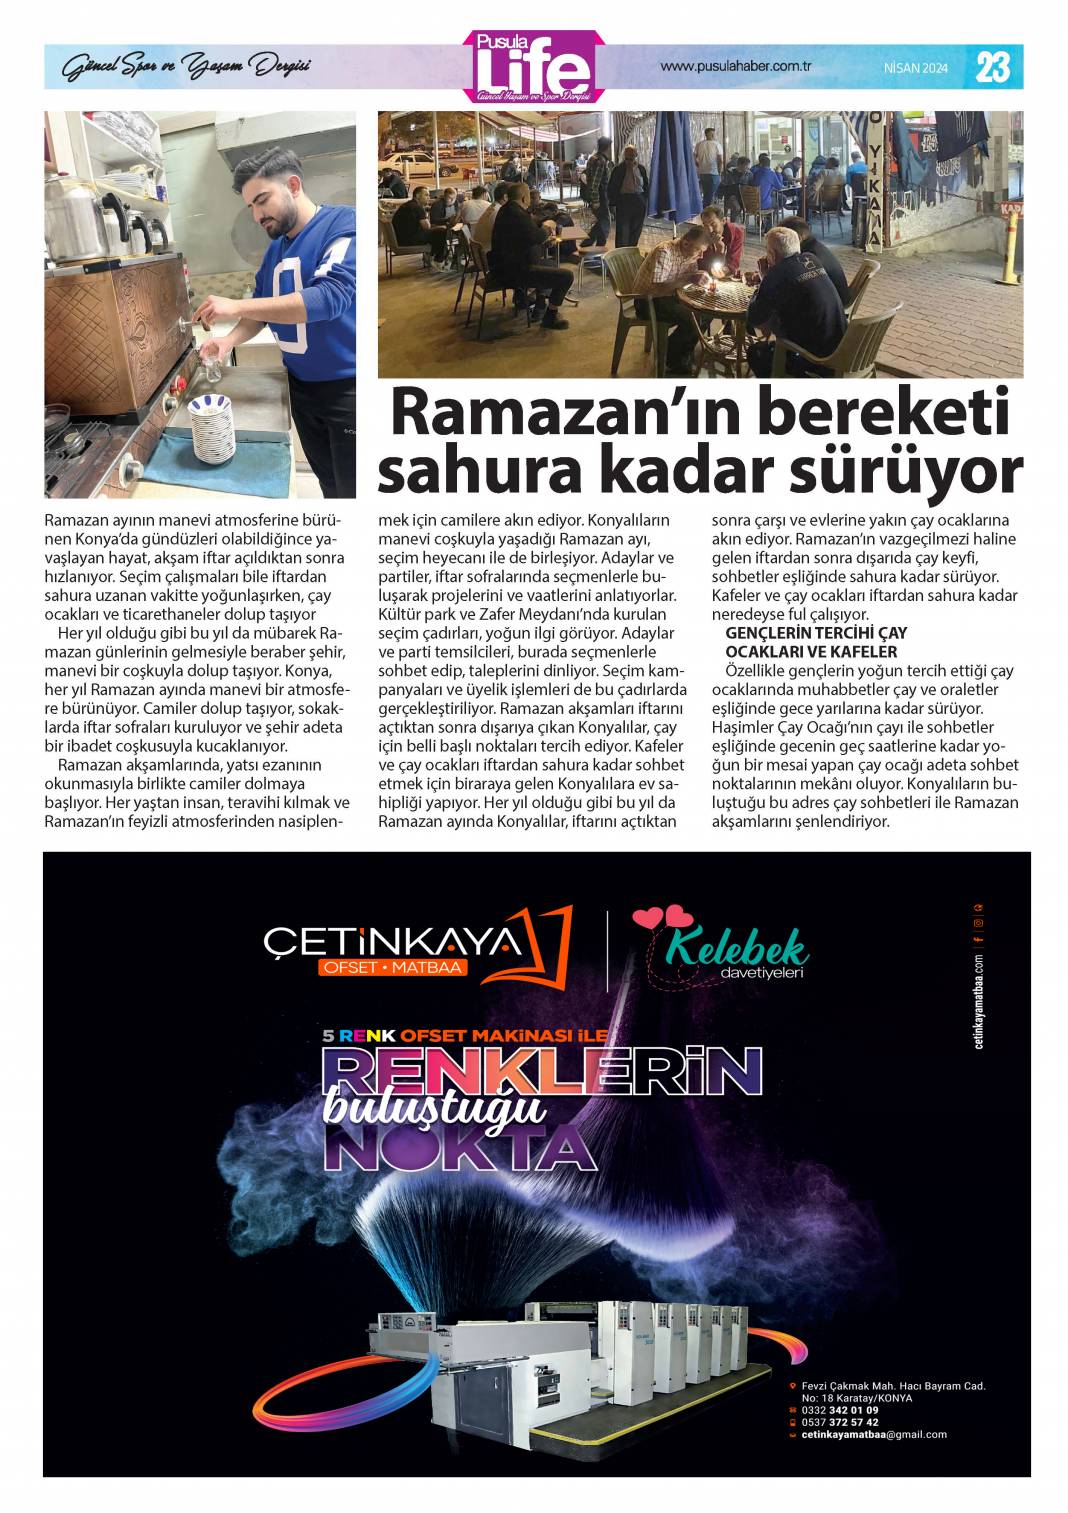 PS Life, Konya'daki Ramazan'ı yansıttı 23